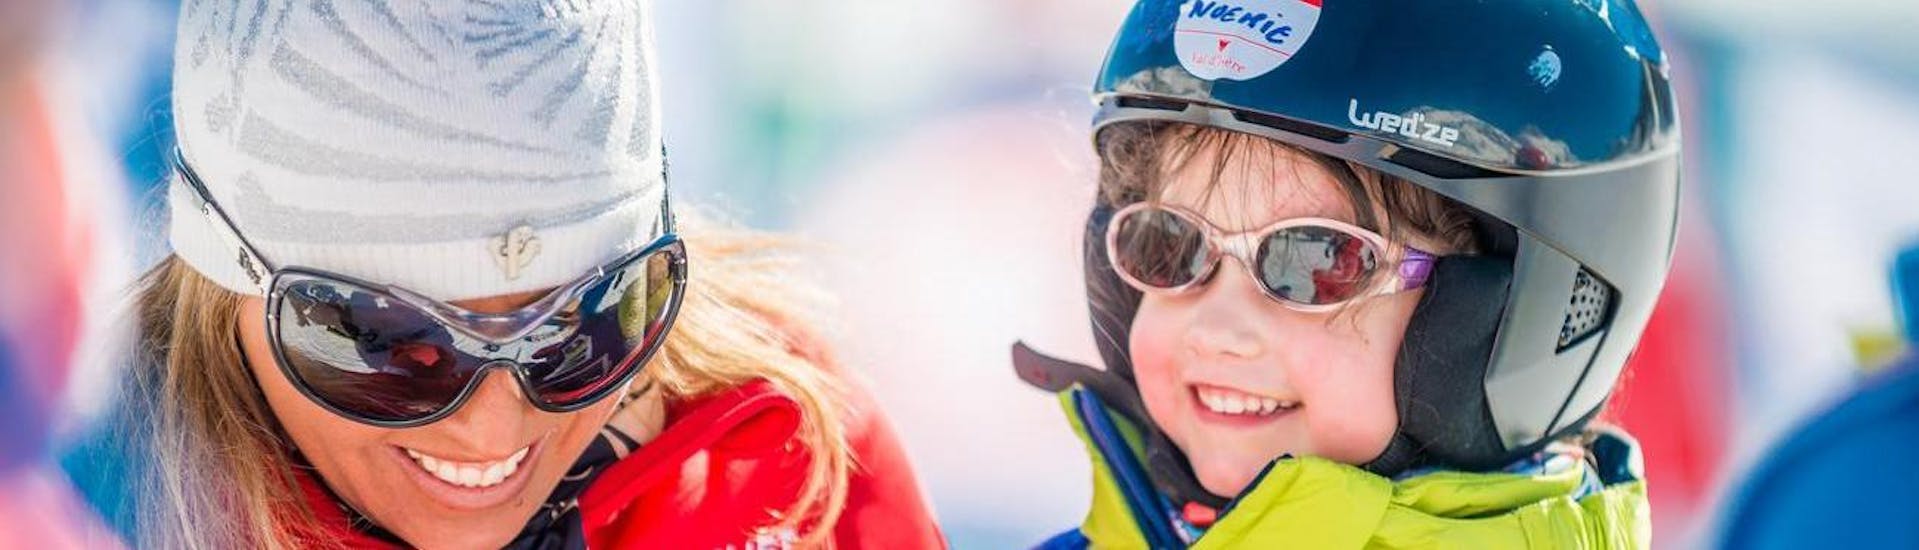 In de speciaal ontworpen kinderskilessen "Max 8" (5-12 jaar) - gevorderd, verbetert een kind de skitechniek onder begeleiding van een instructeur van ESF Val d'Isère.